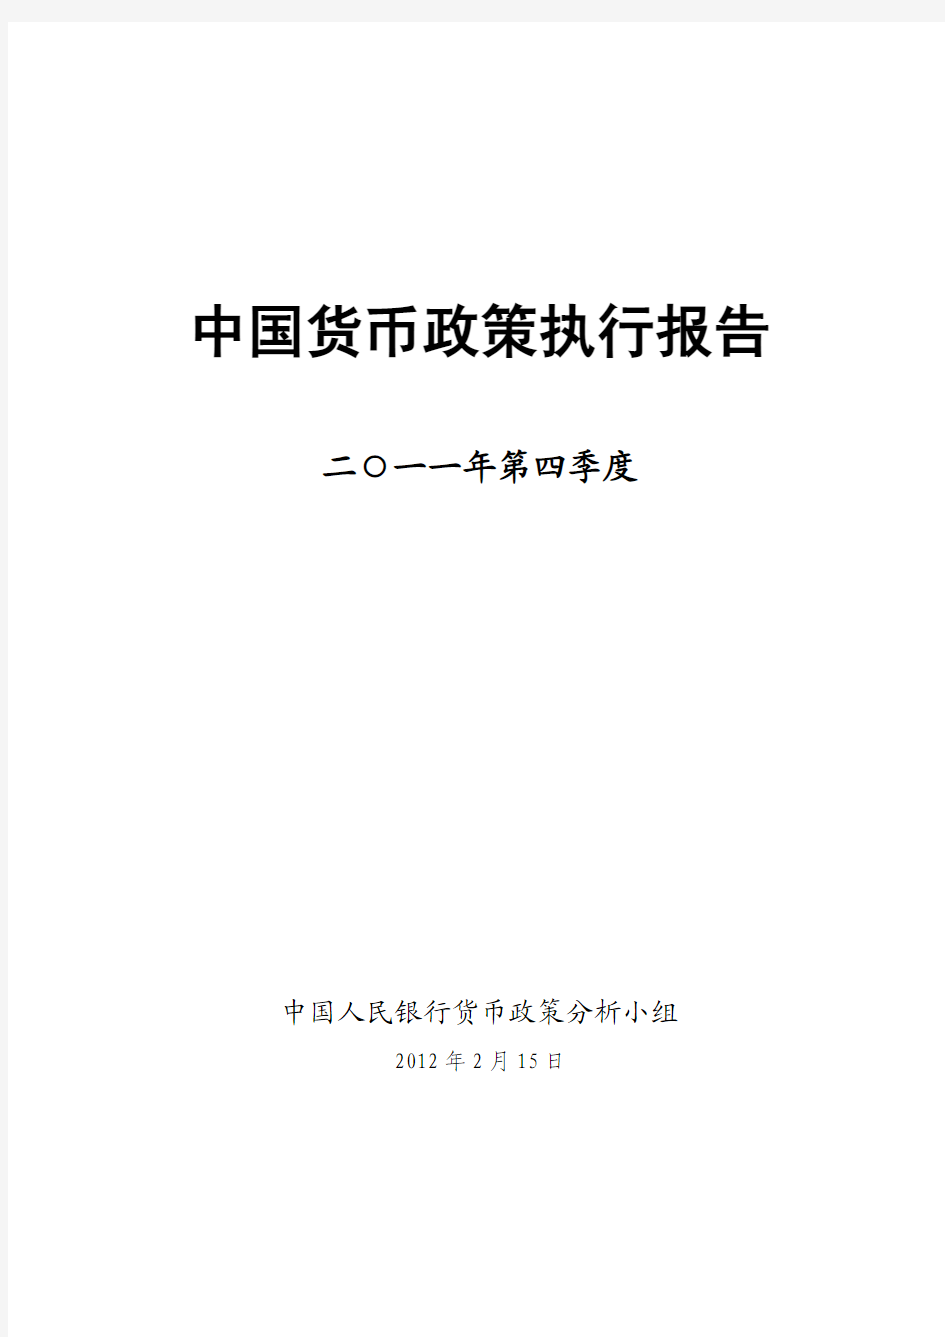 2011年第四季度中国货币政策执行报告